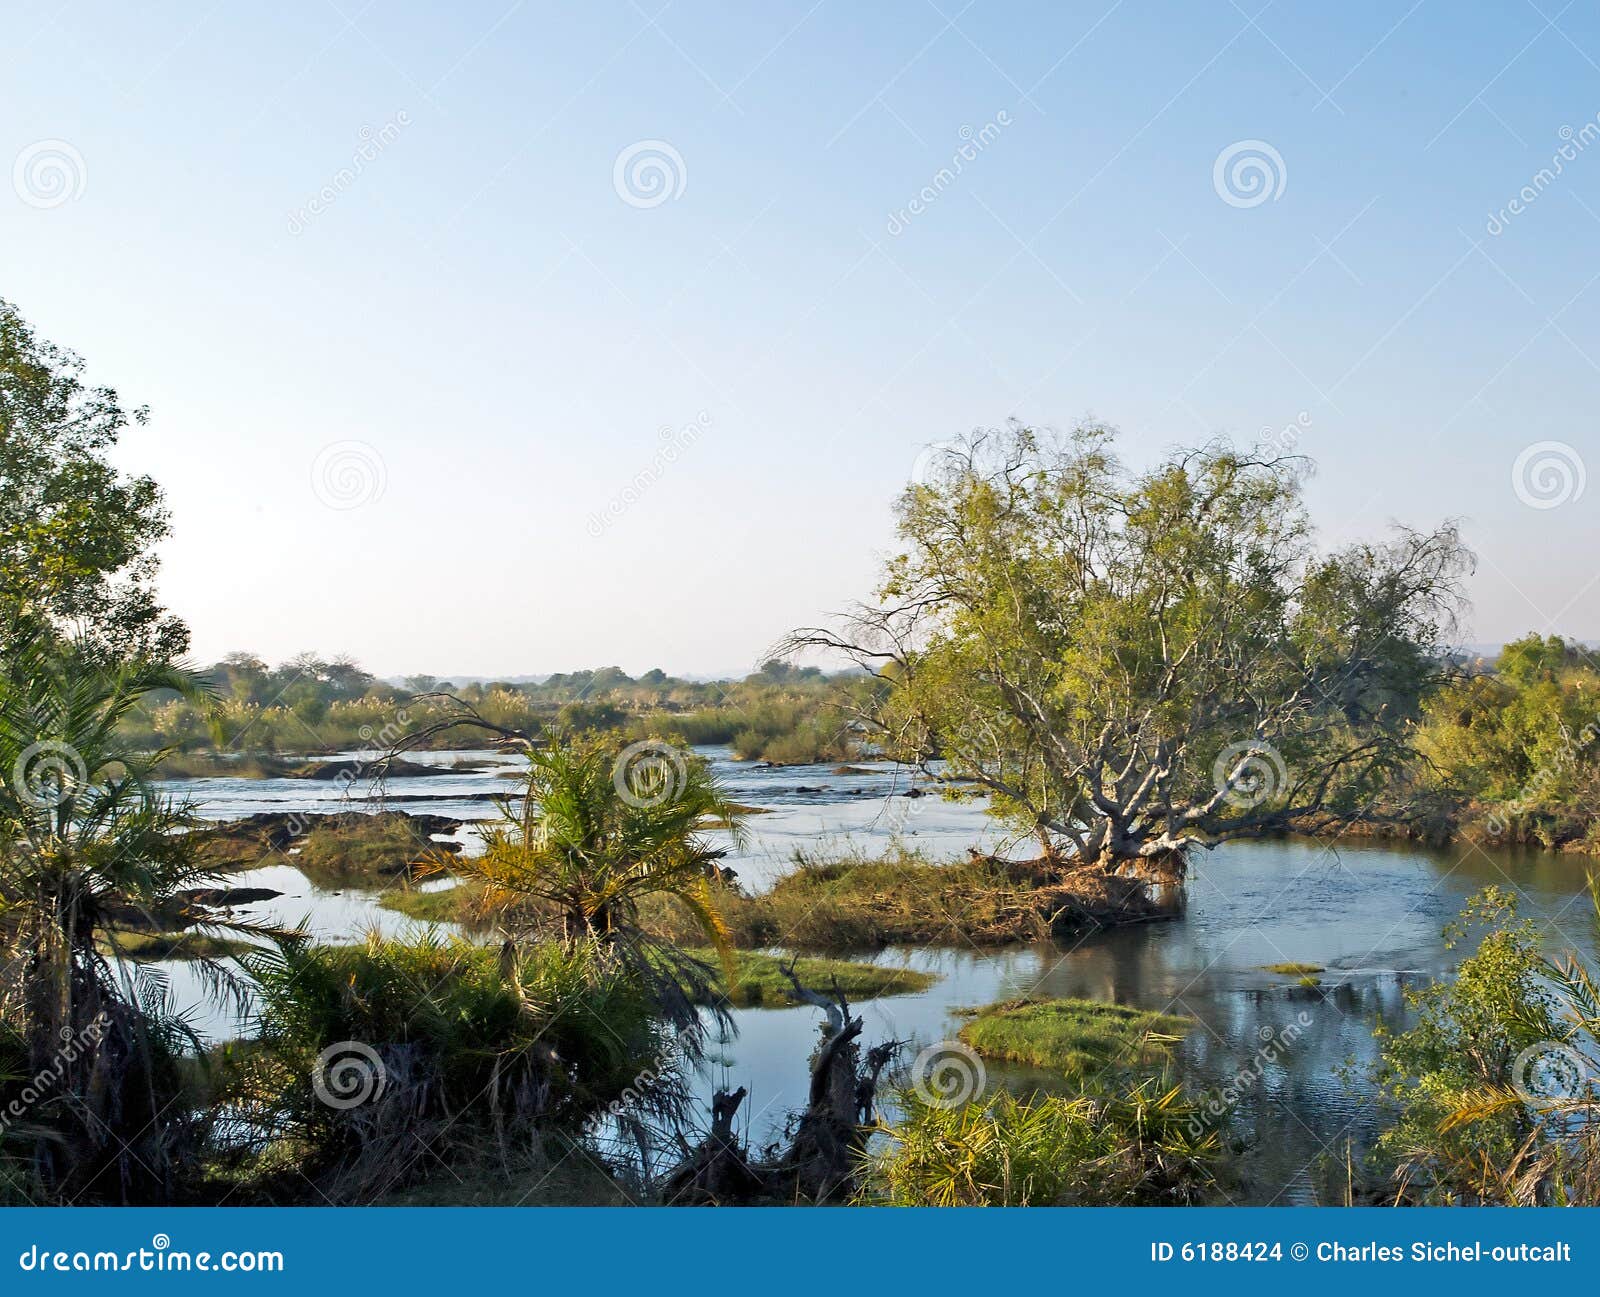 zambezi river in zambia